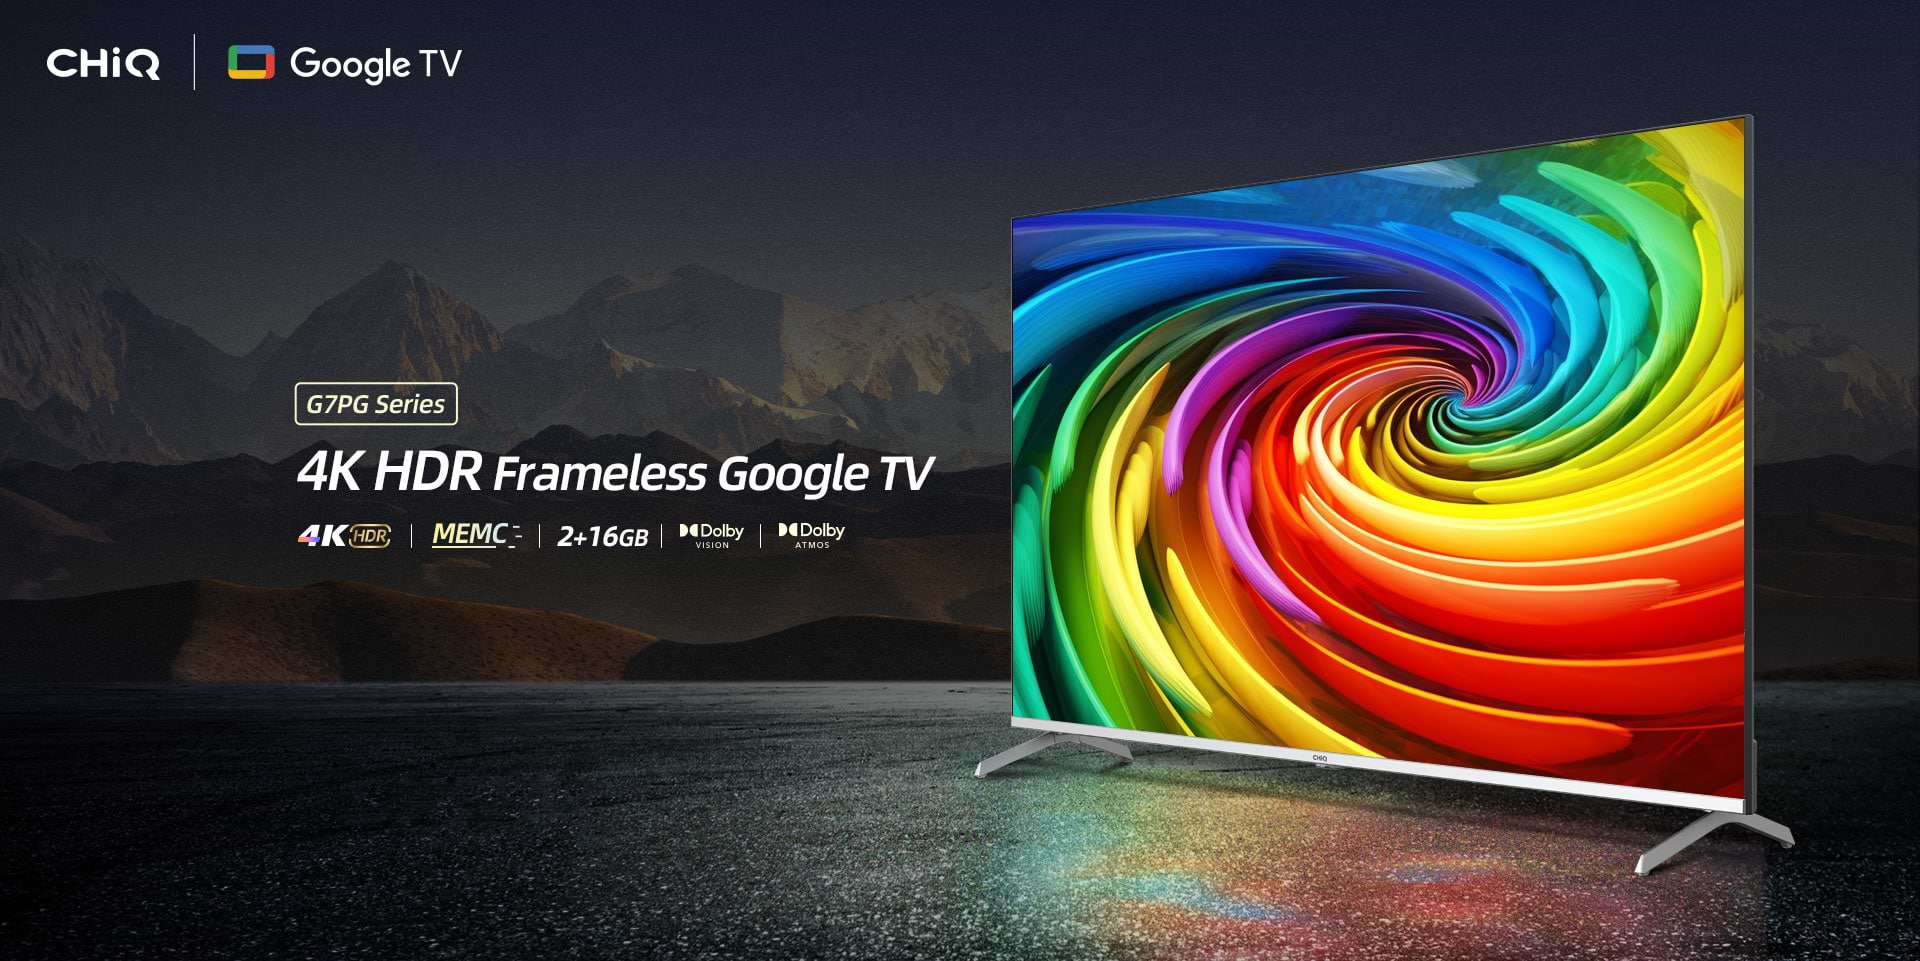 טלוויזיה חכמה CHiQ 50" U50G7PG Google TV 4K UHD - שנתיים אחריות ע"י אלקטרה היבואן הרשמי